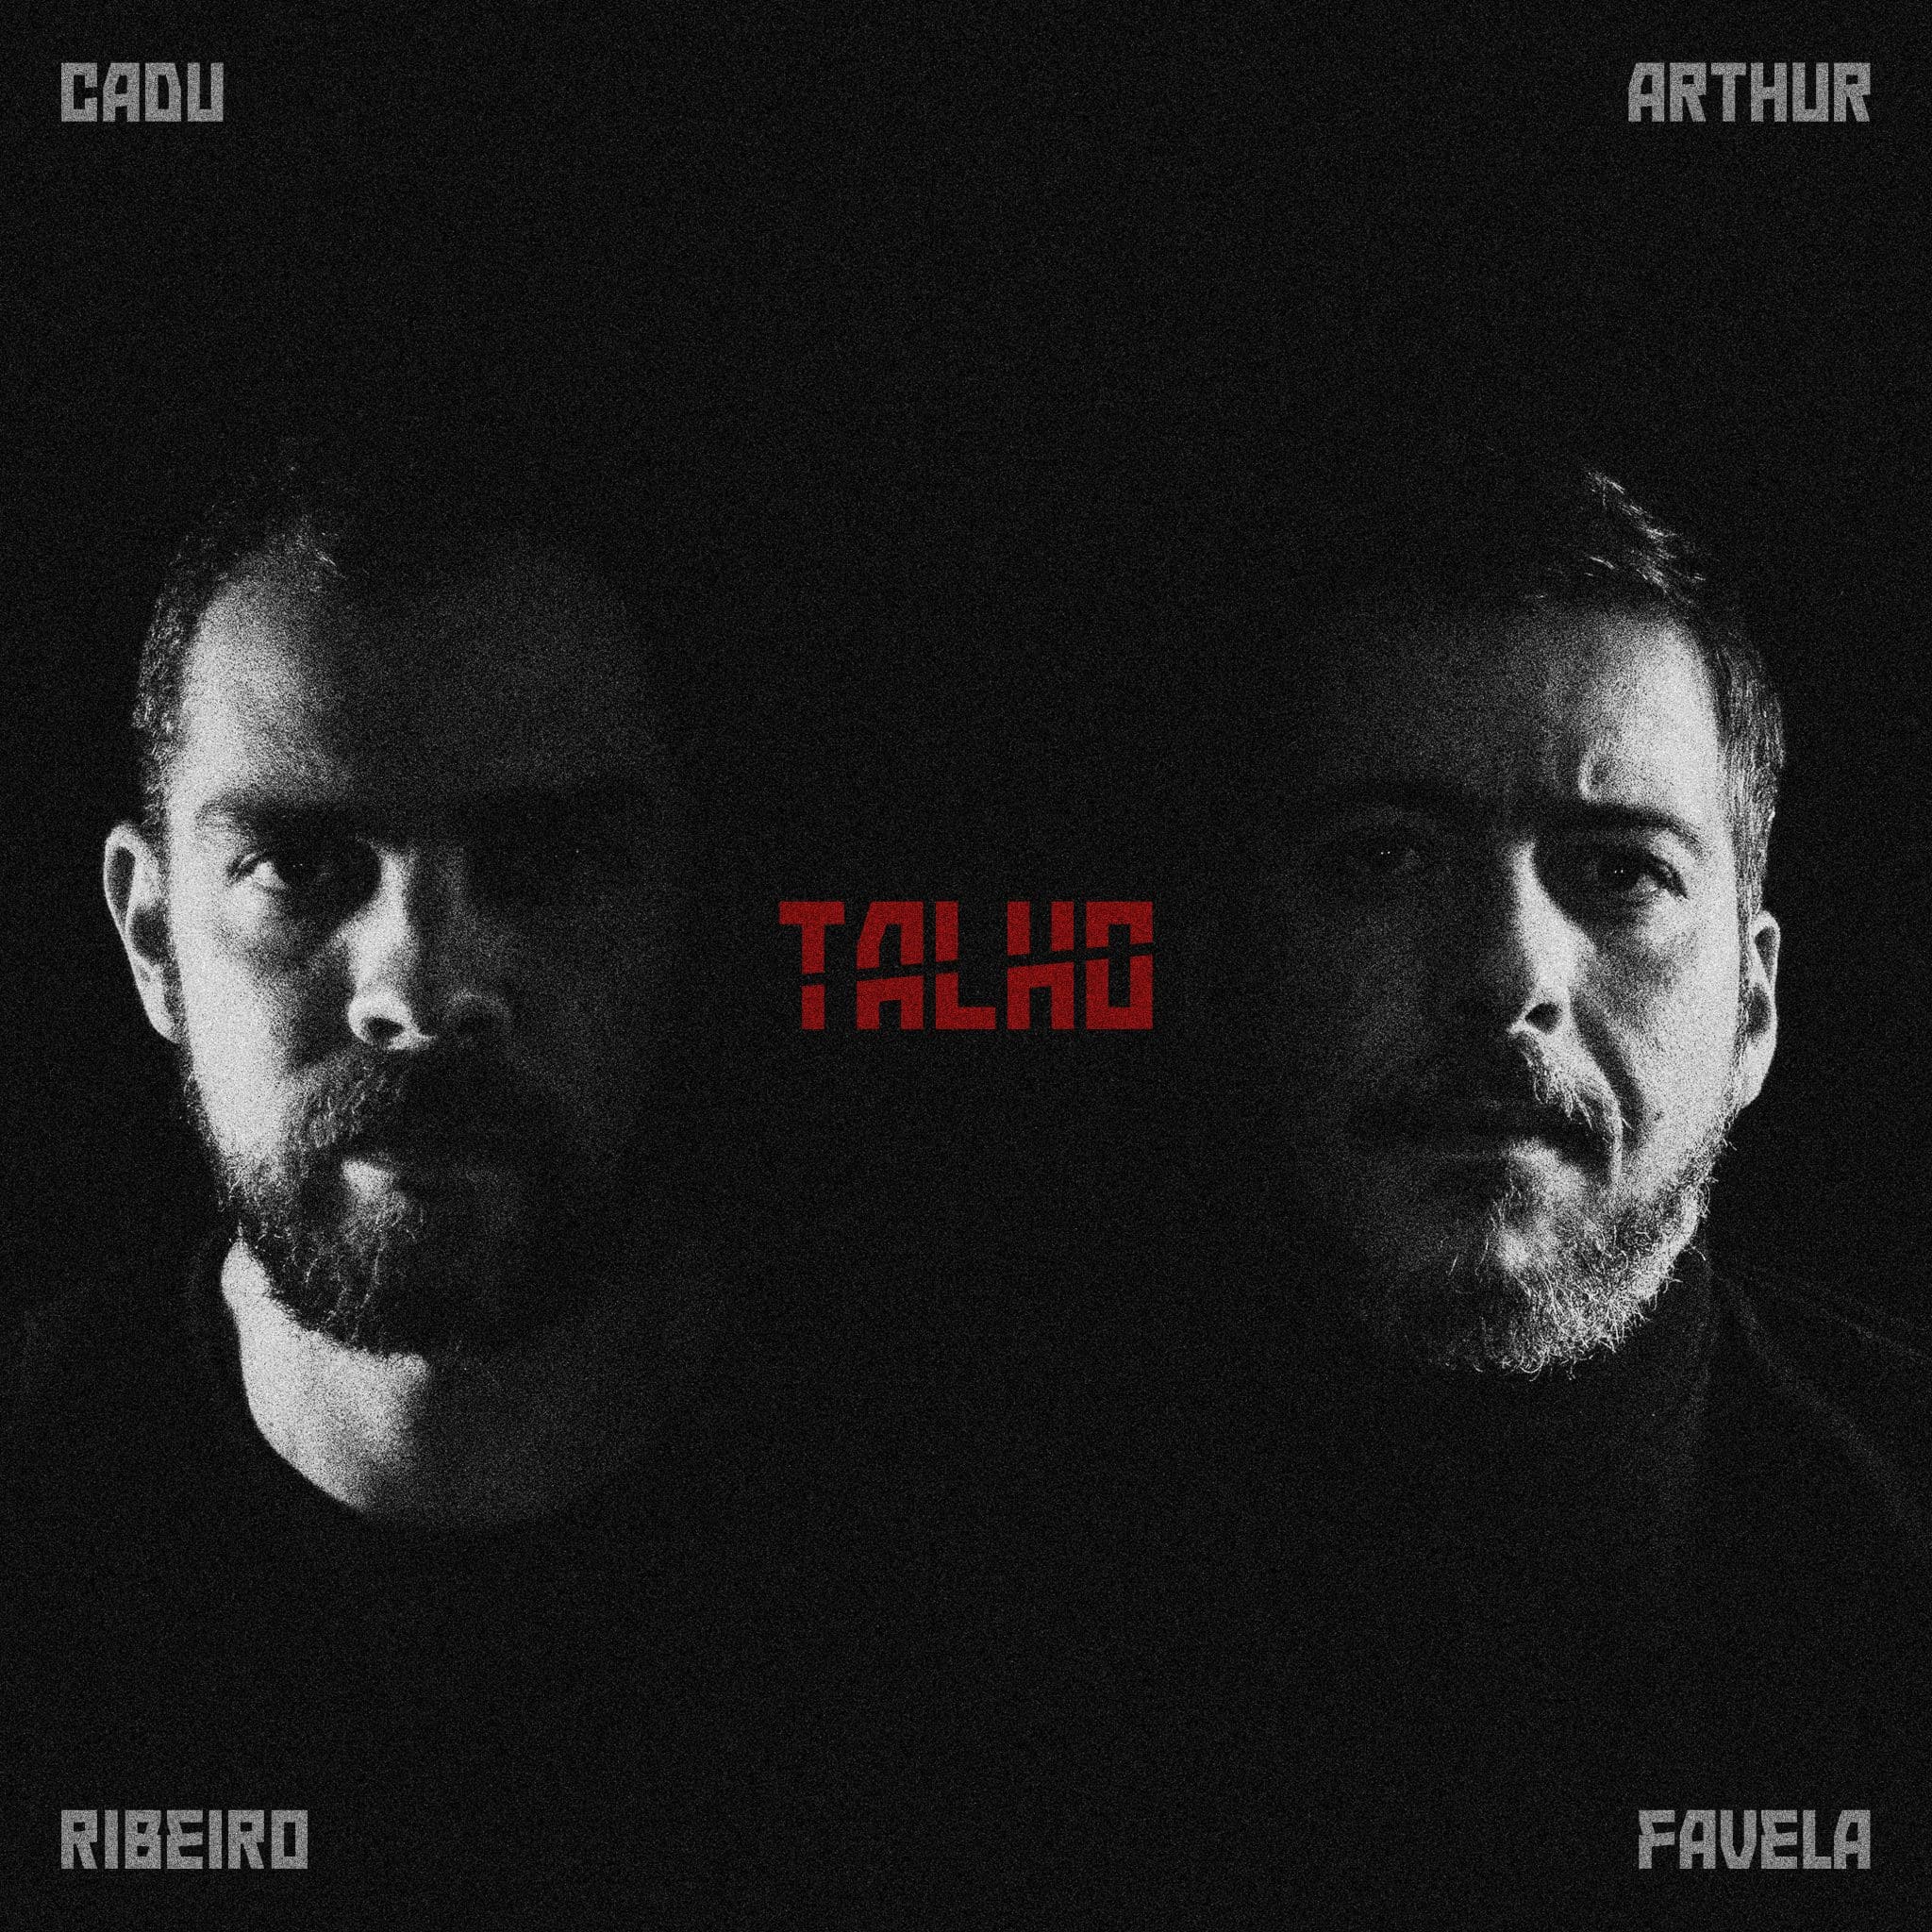 revistaprosaversoearte.com - Cadu Ribeiro e Arthur Favela lançam o álbum 'Talho'